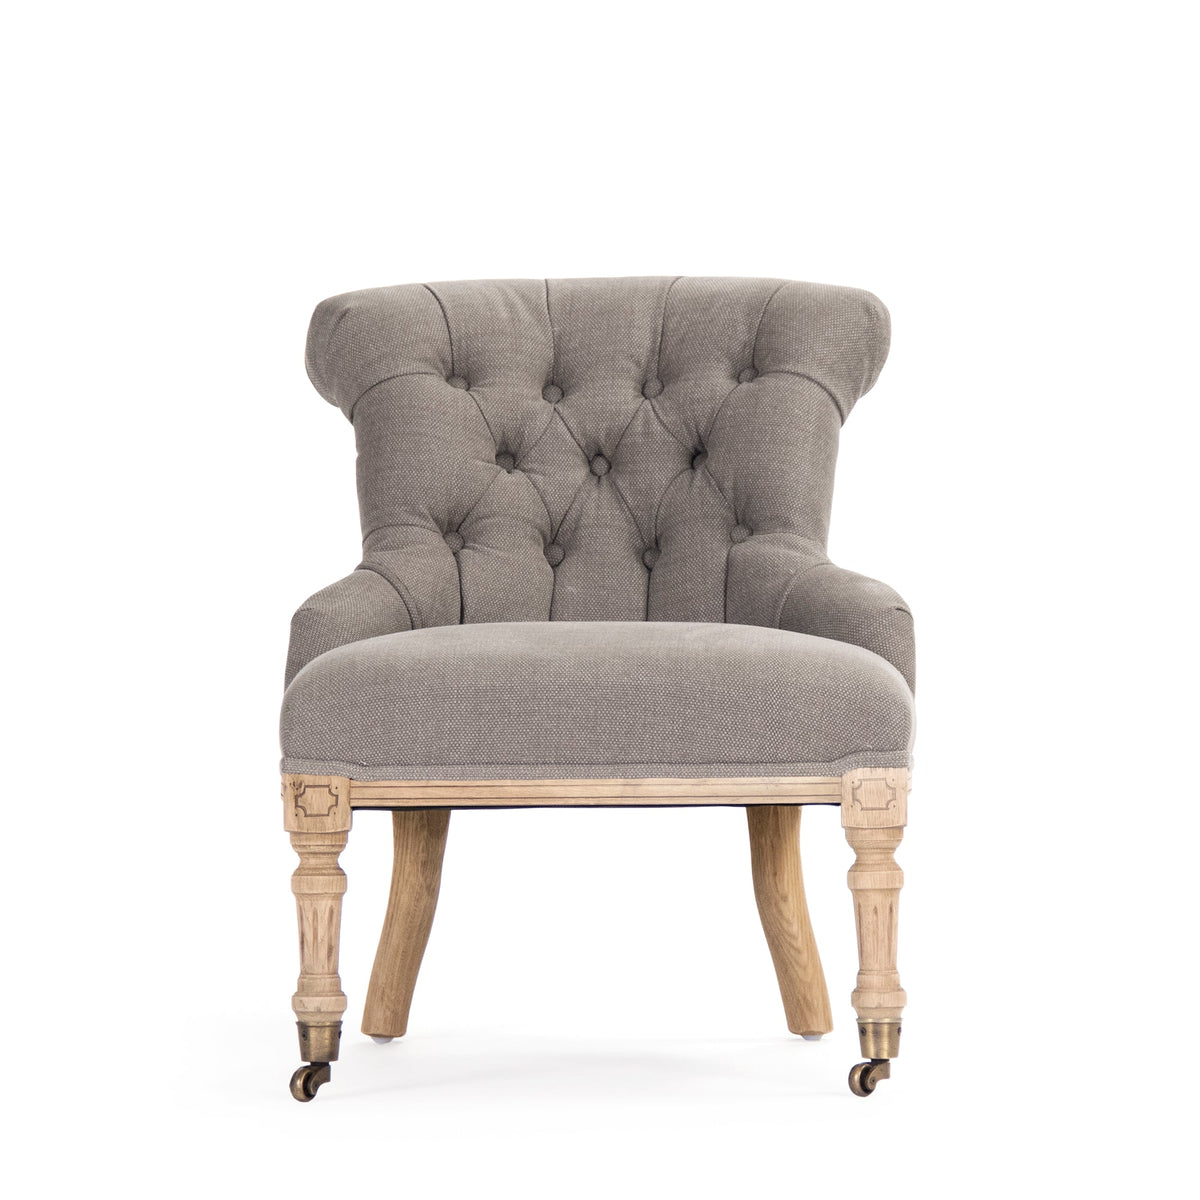 Fulbert Chair by Zentique